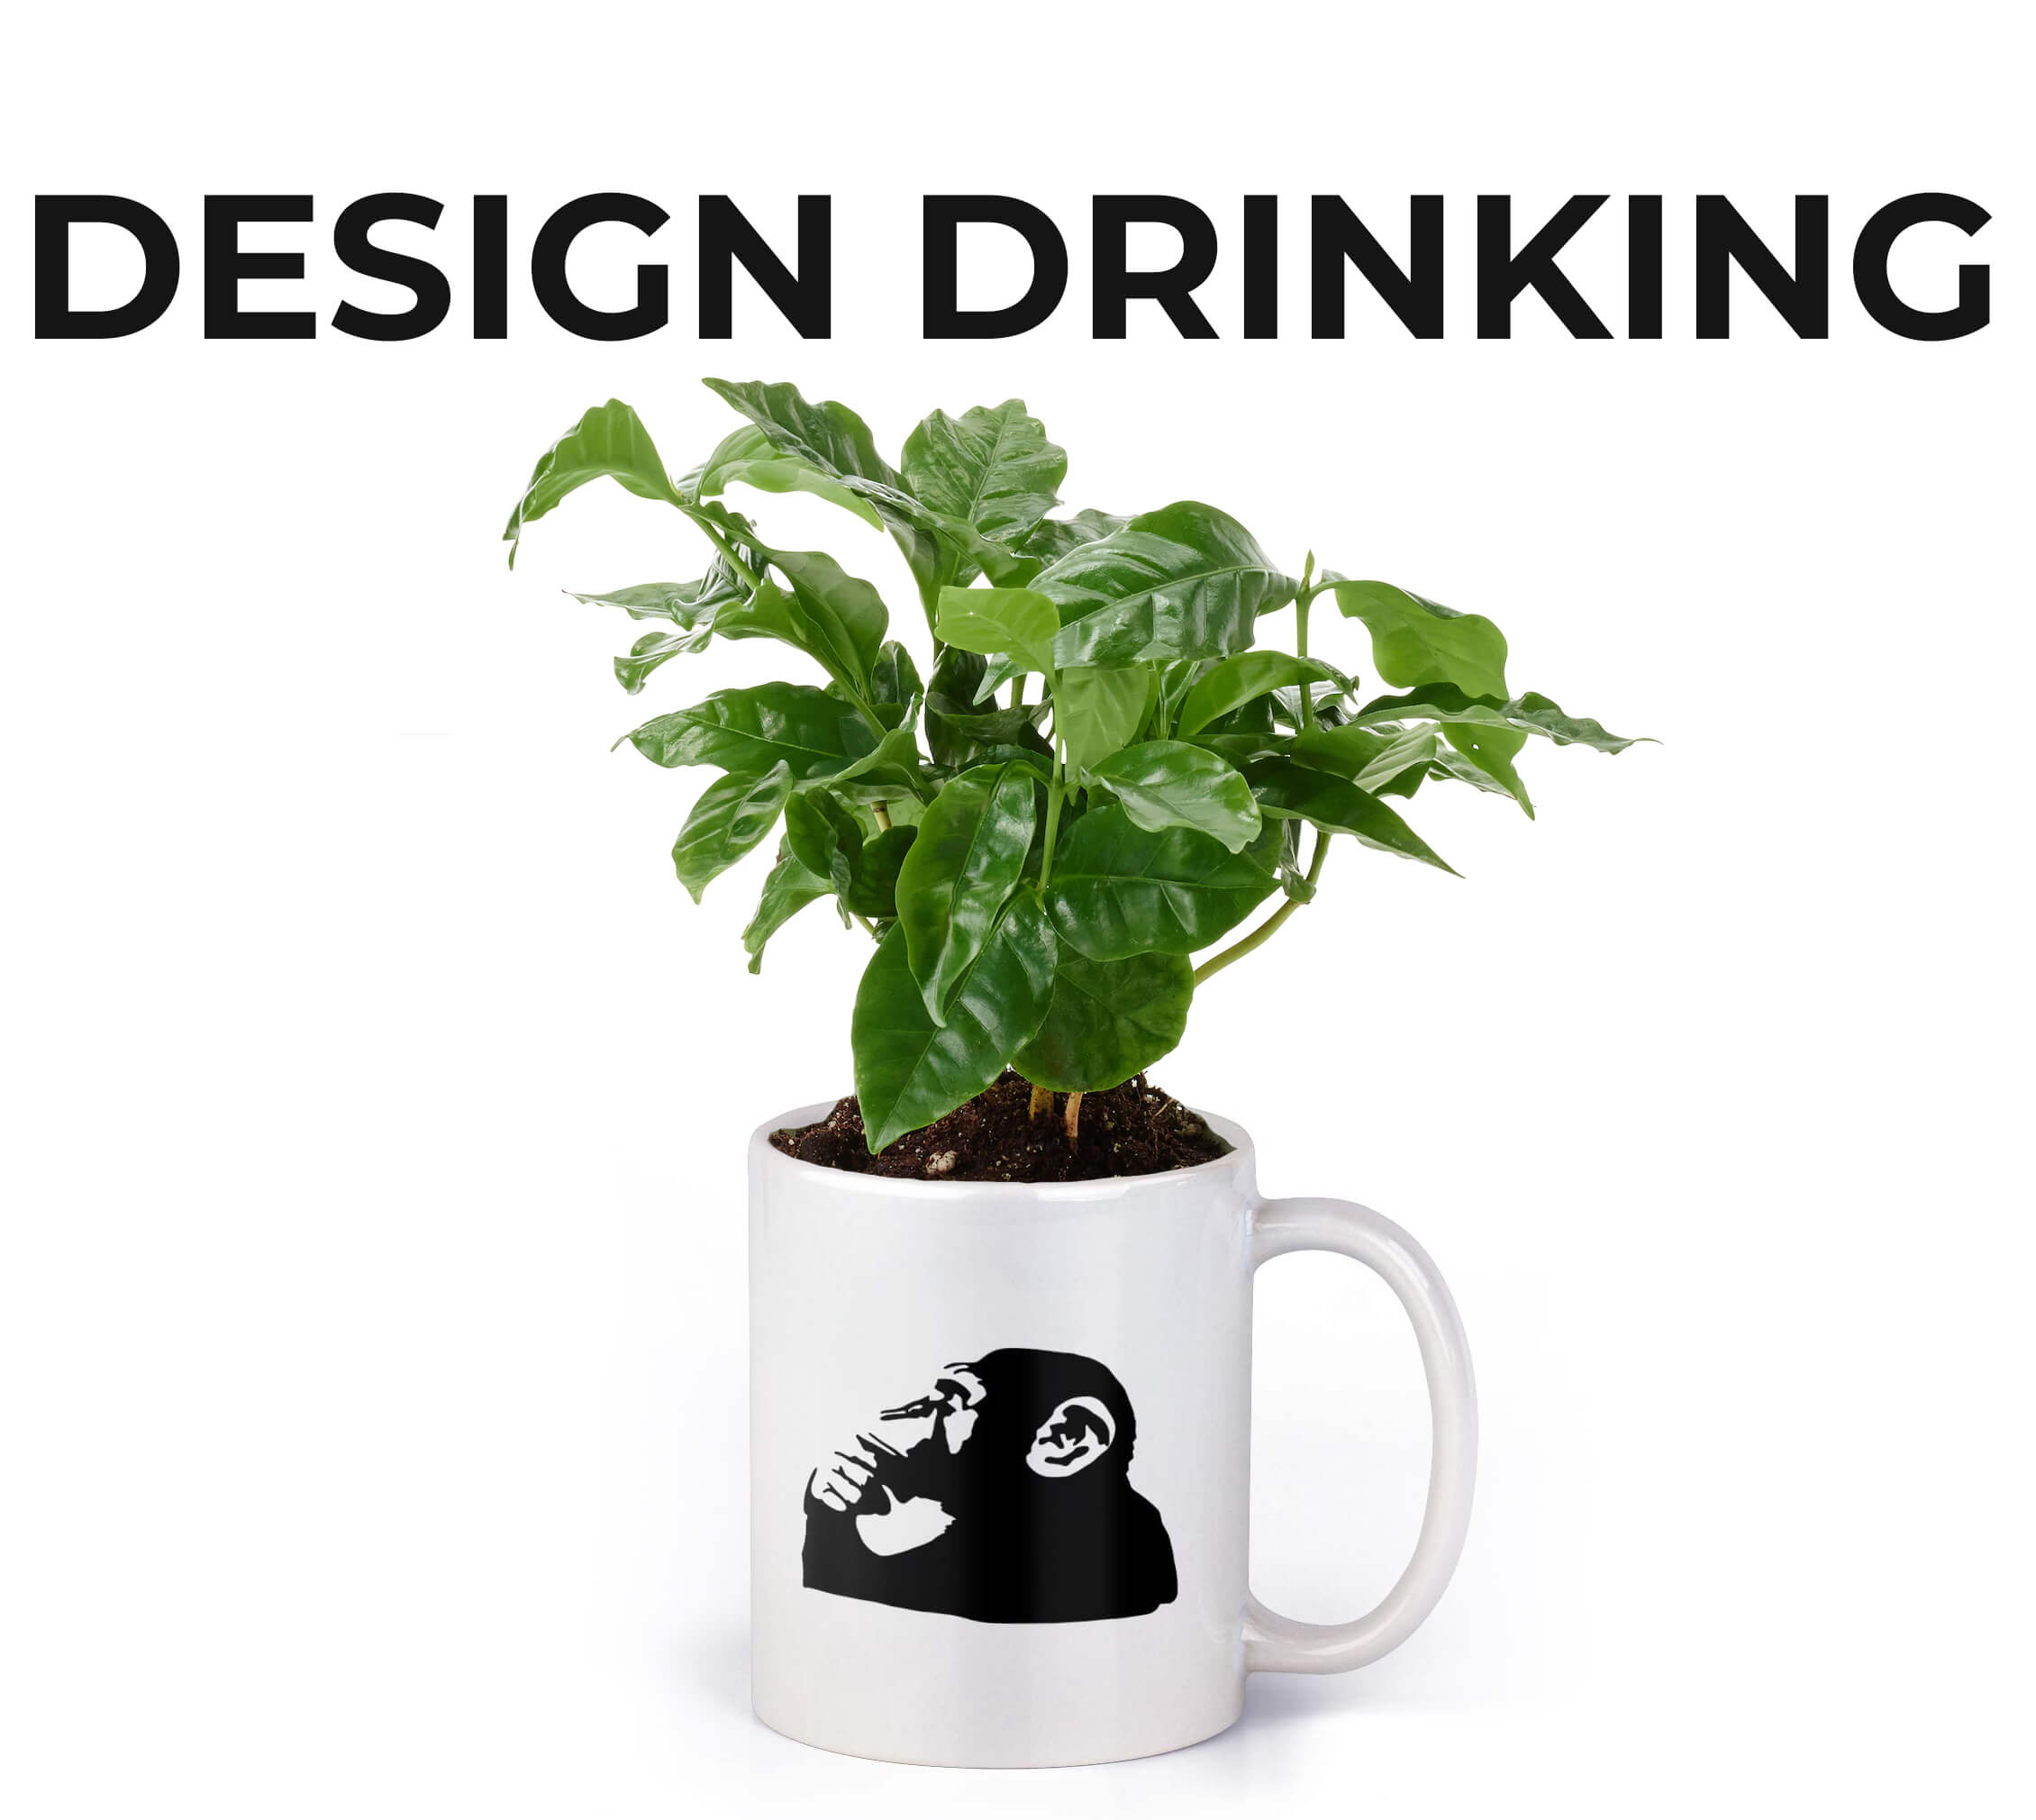 Design Drinking